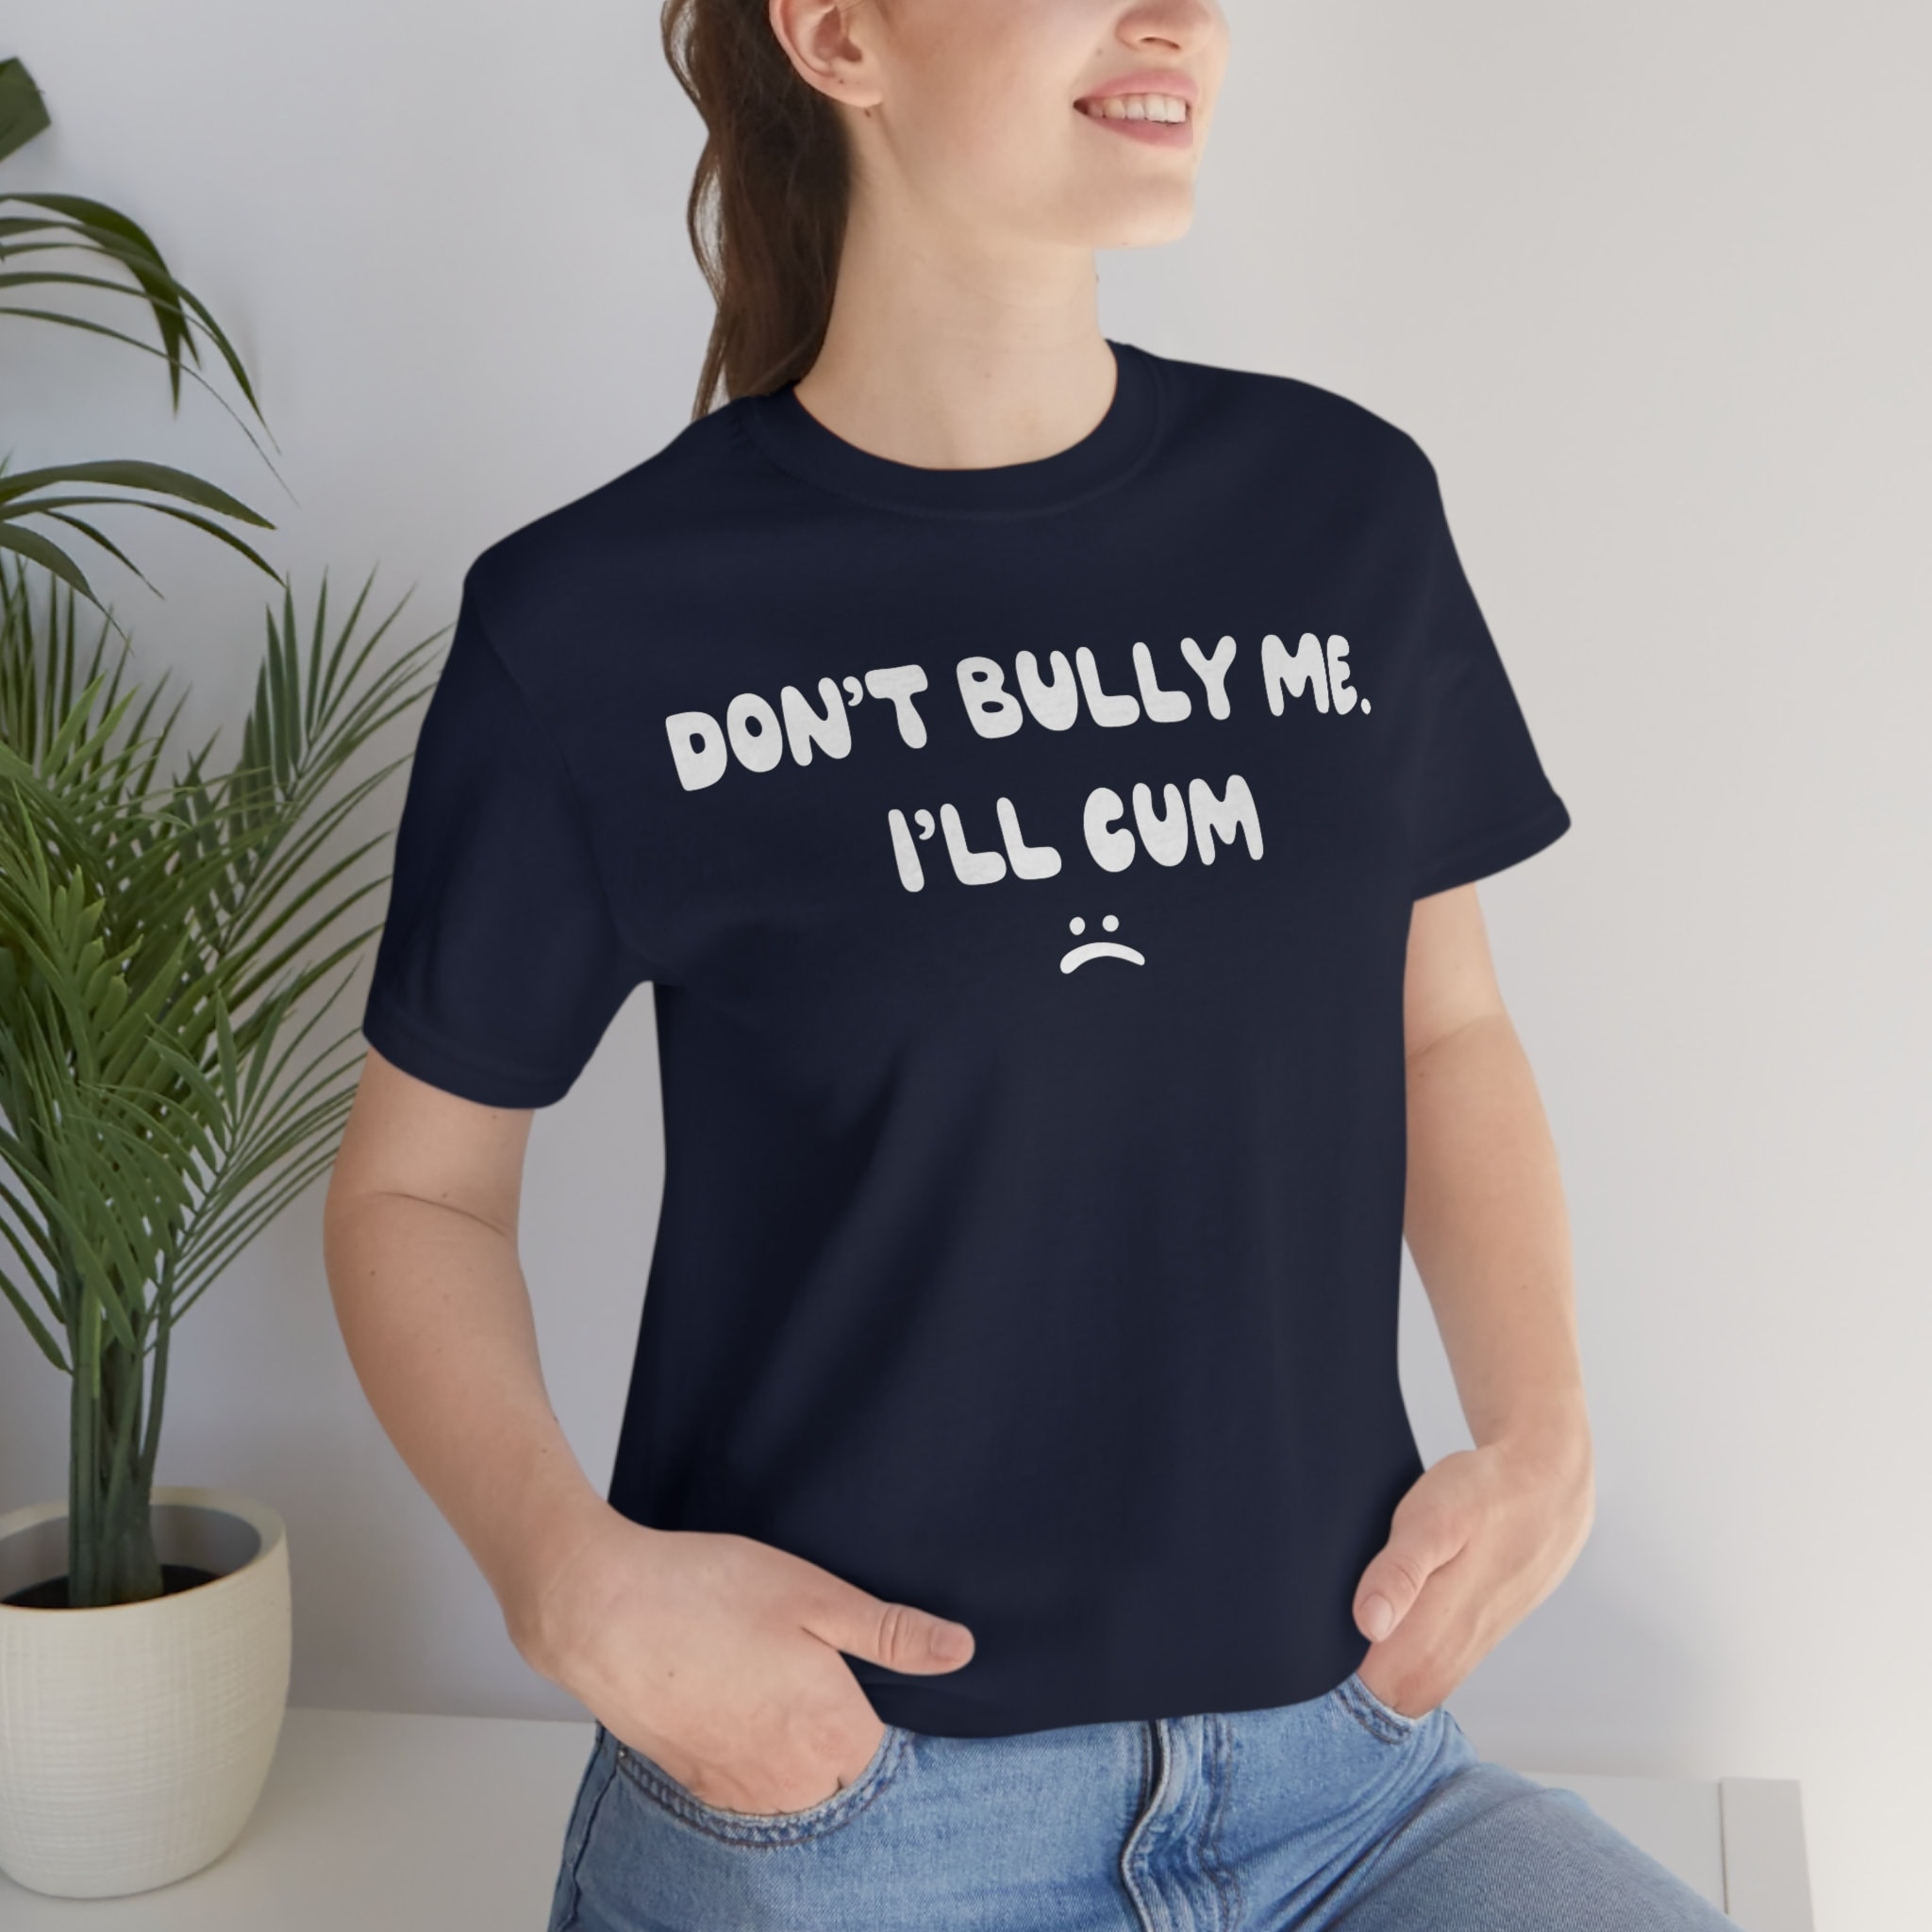 aenna sharma share cum on her shirt photos